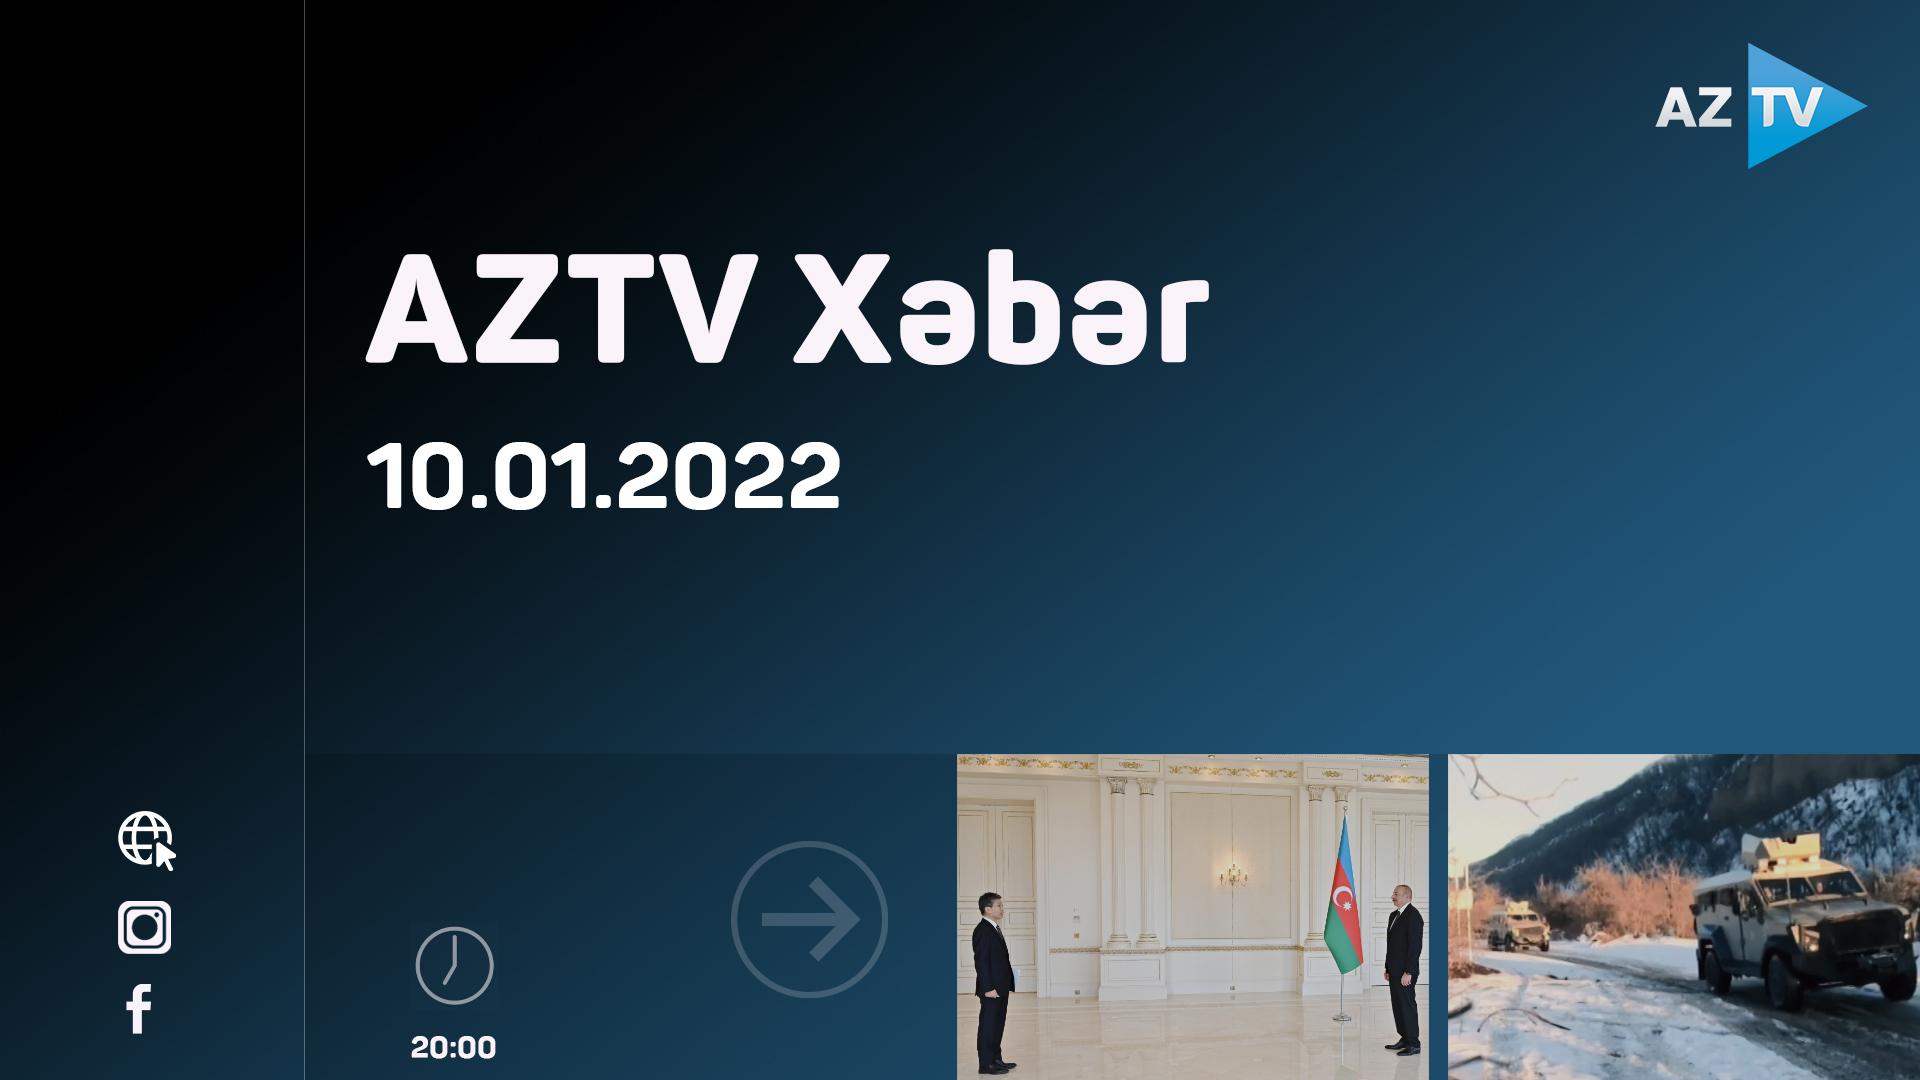 AZTV xəbər 20:00 | 10.01.2022